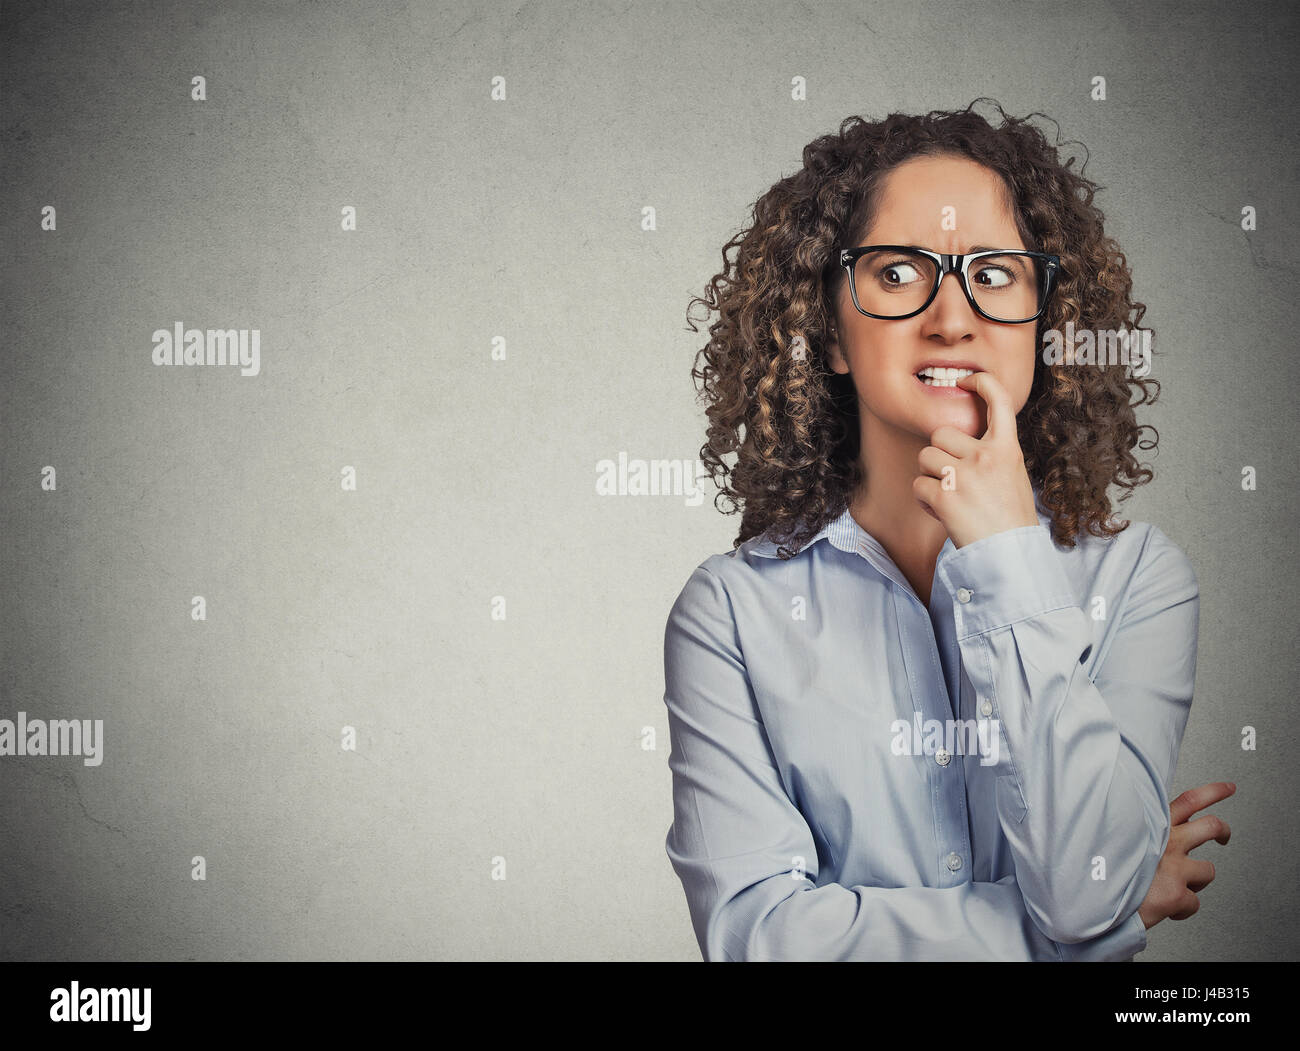 Closeup Portrait nervös Frau mit Brille, die ihre Sehnsucht nach etwas ängstlich isolierte graue Wand Hintergrund mit textfreiraum Fingernägel beißen. Negat Stockfoto